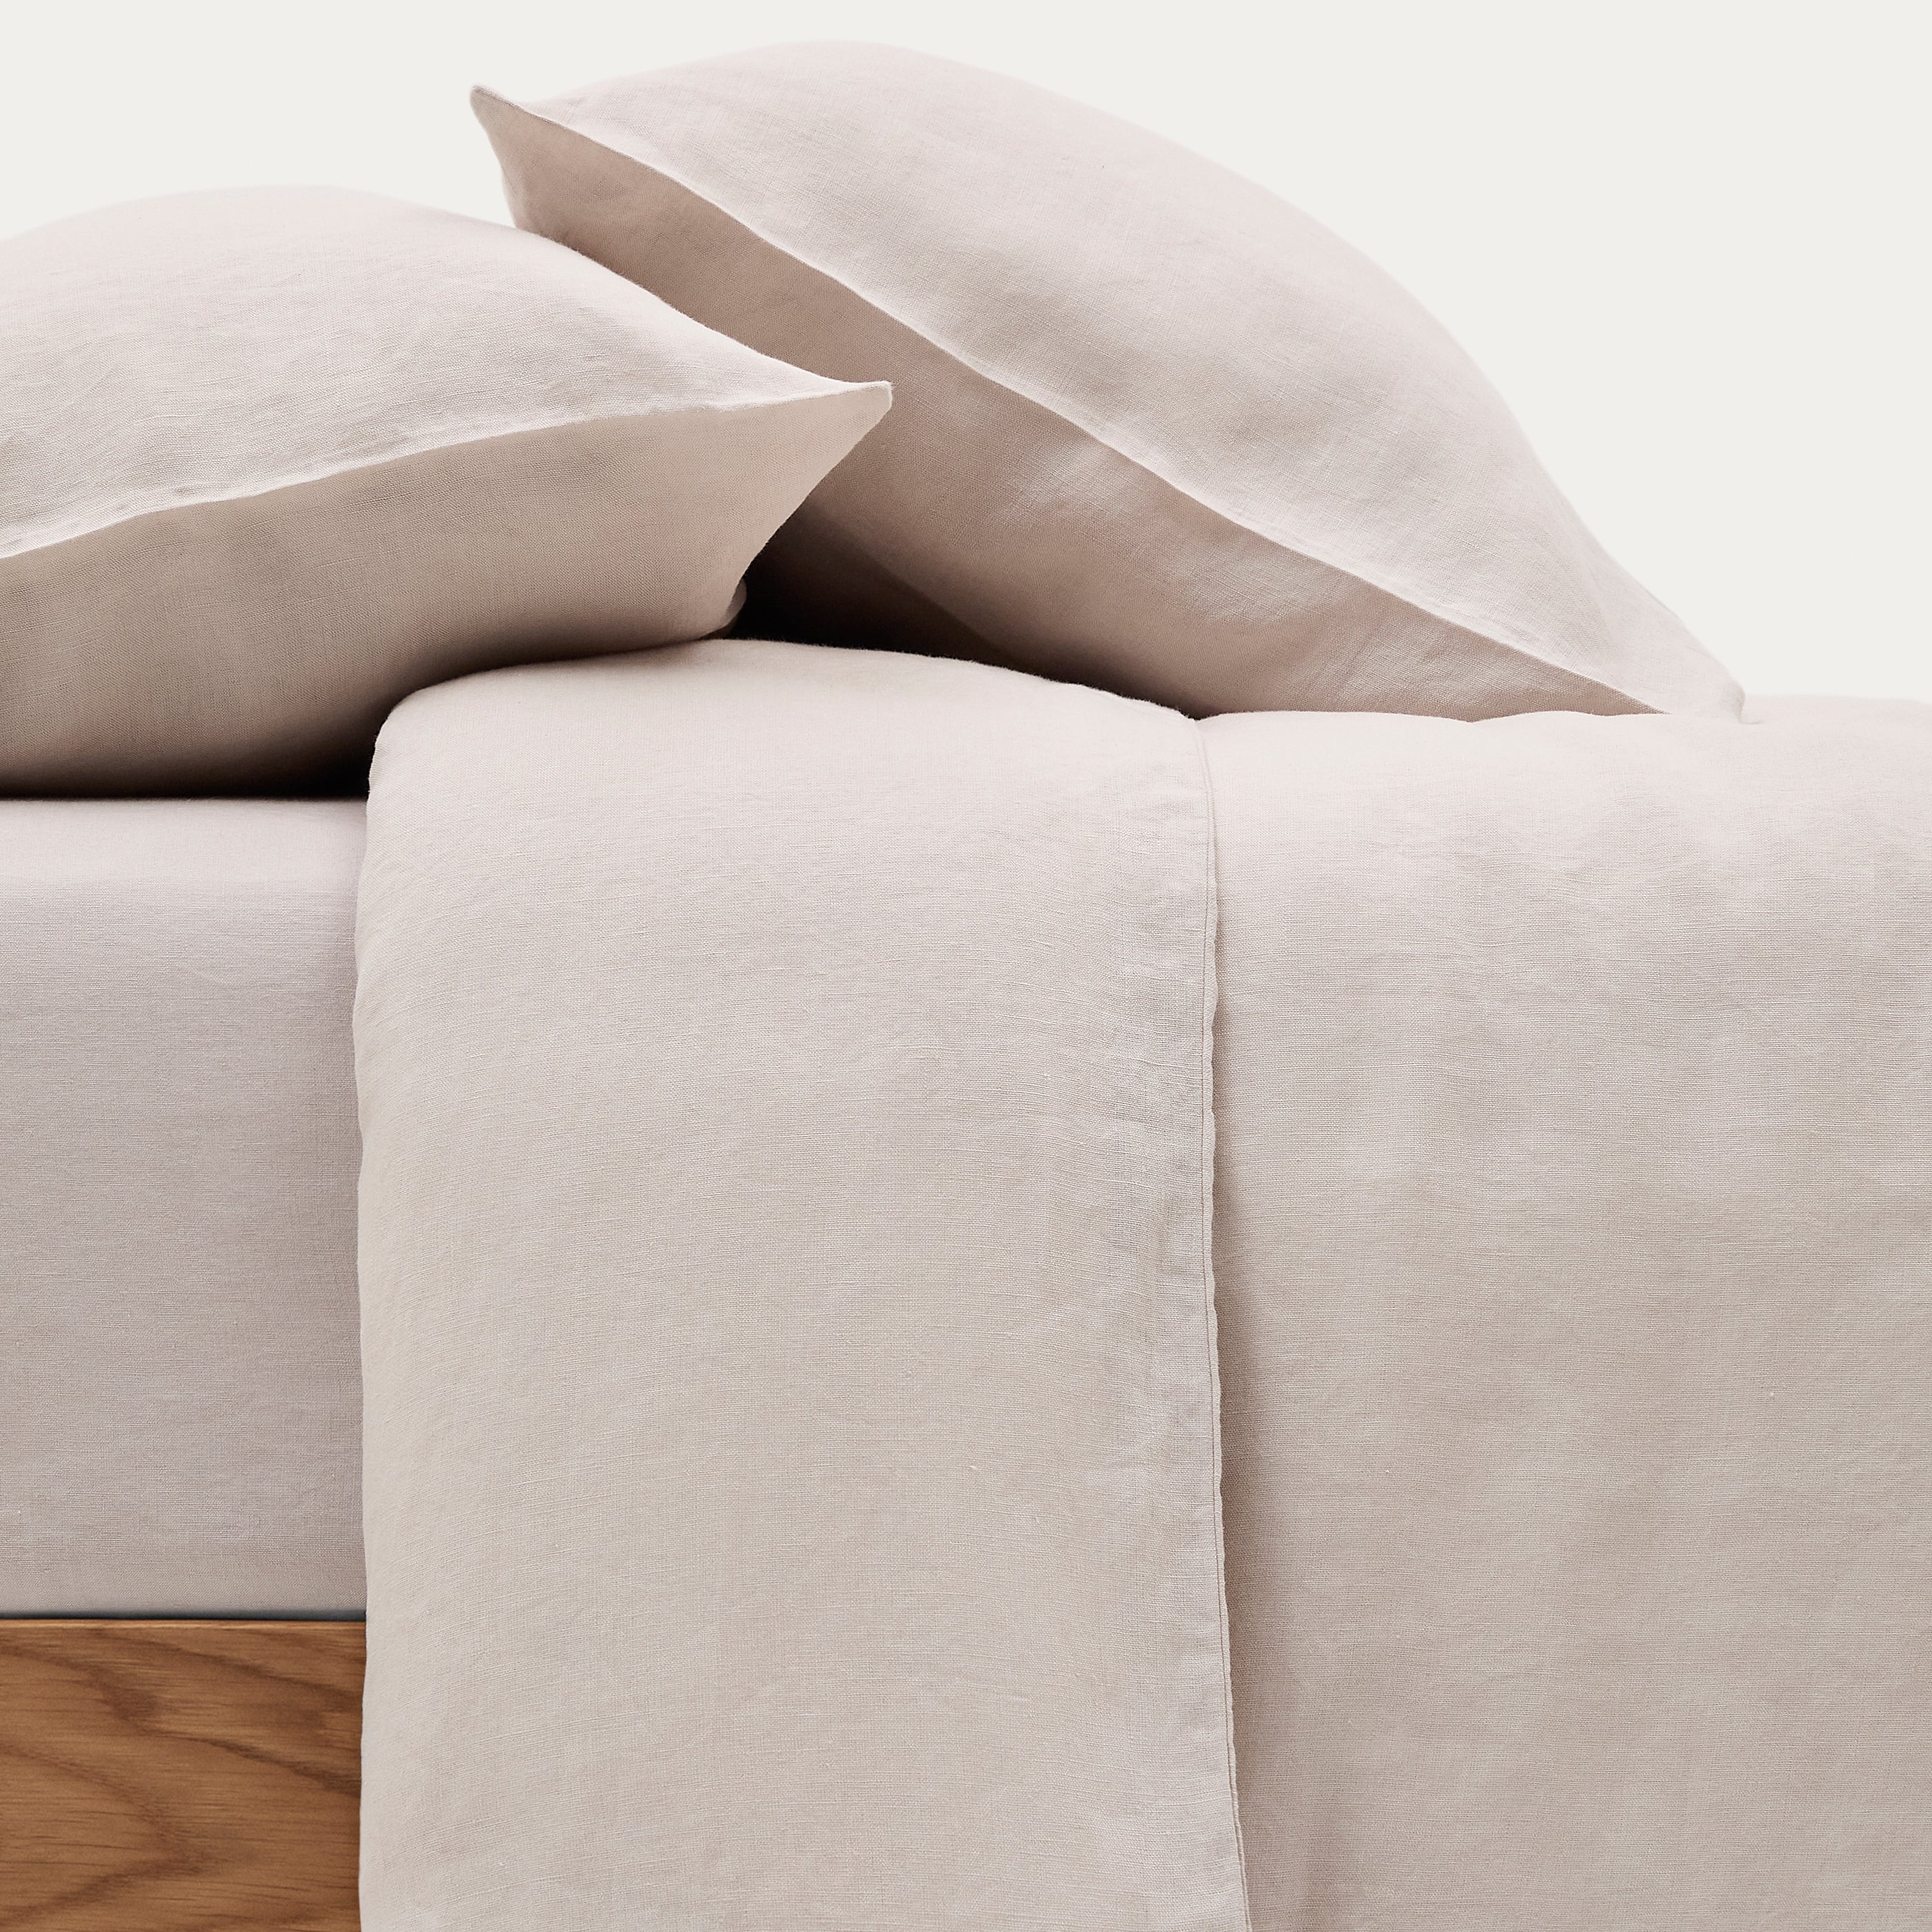 Simmel szürke, pamut és len ágytakaró és párnahuzat szett, 180 cm-es ágyhoz